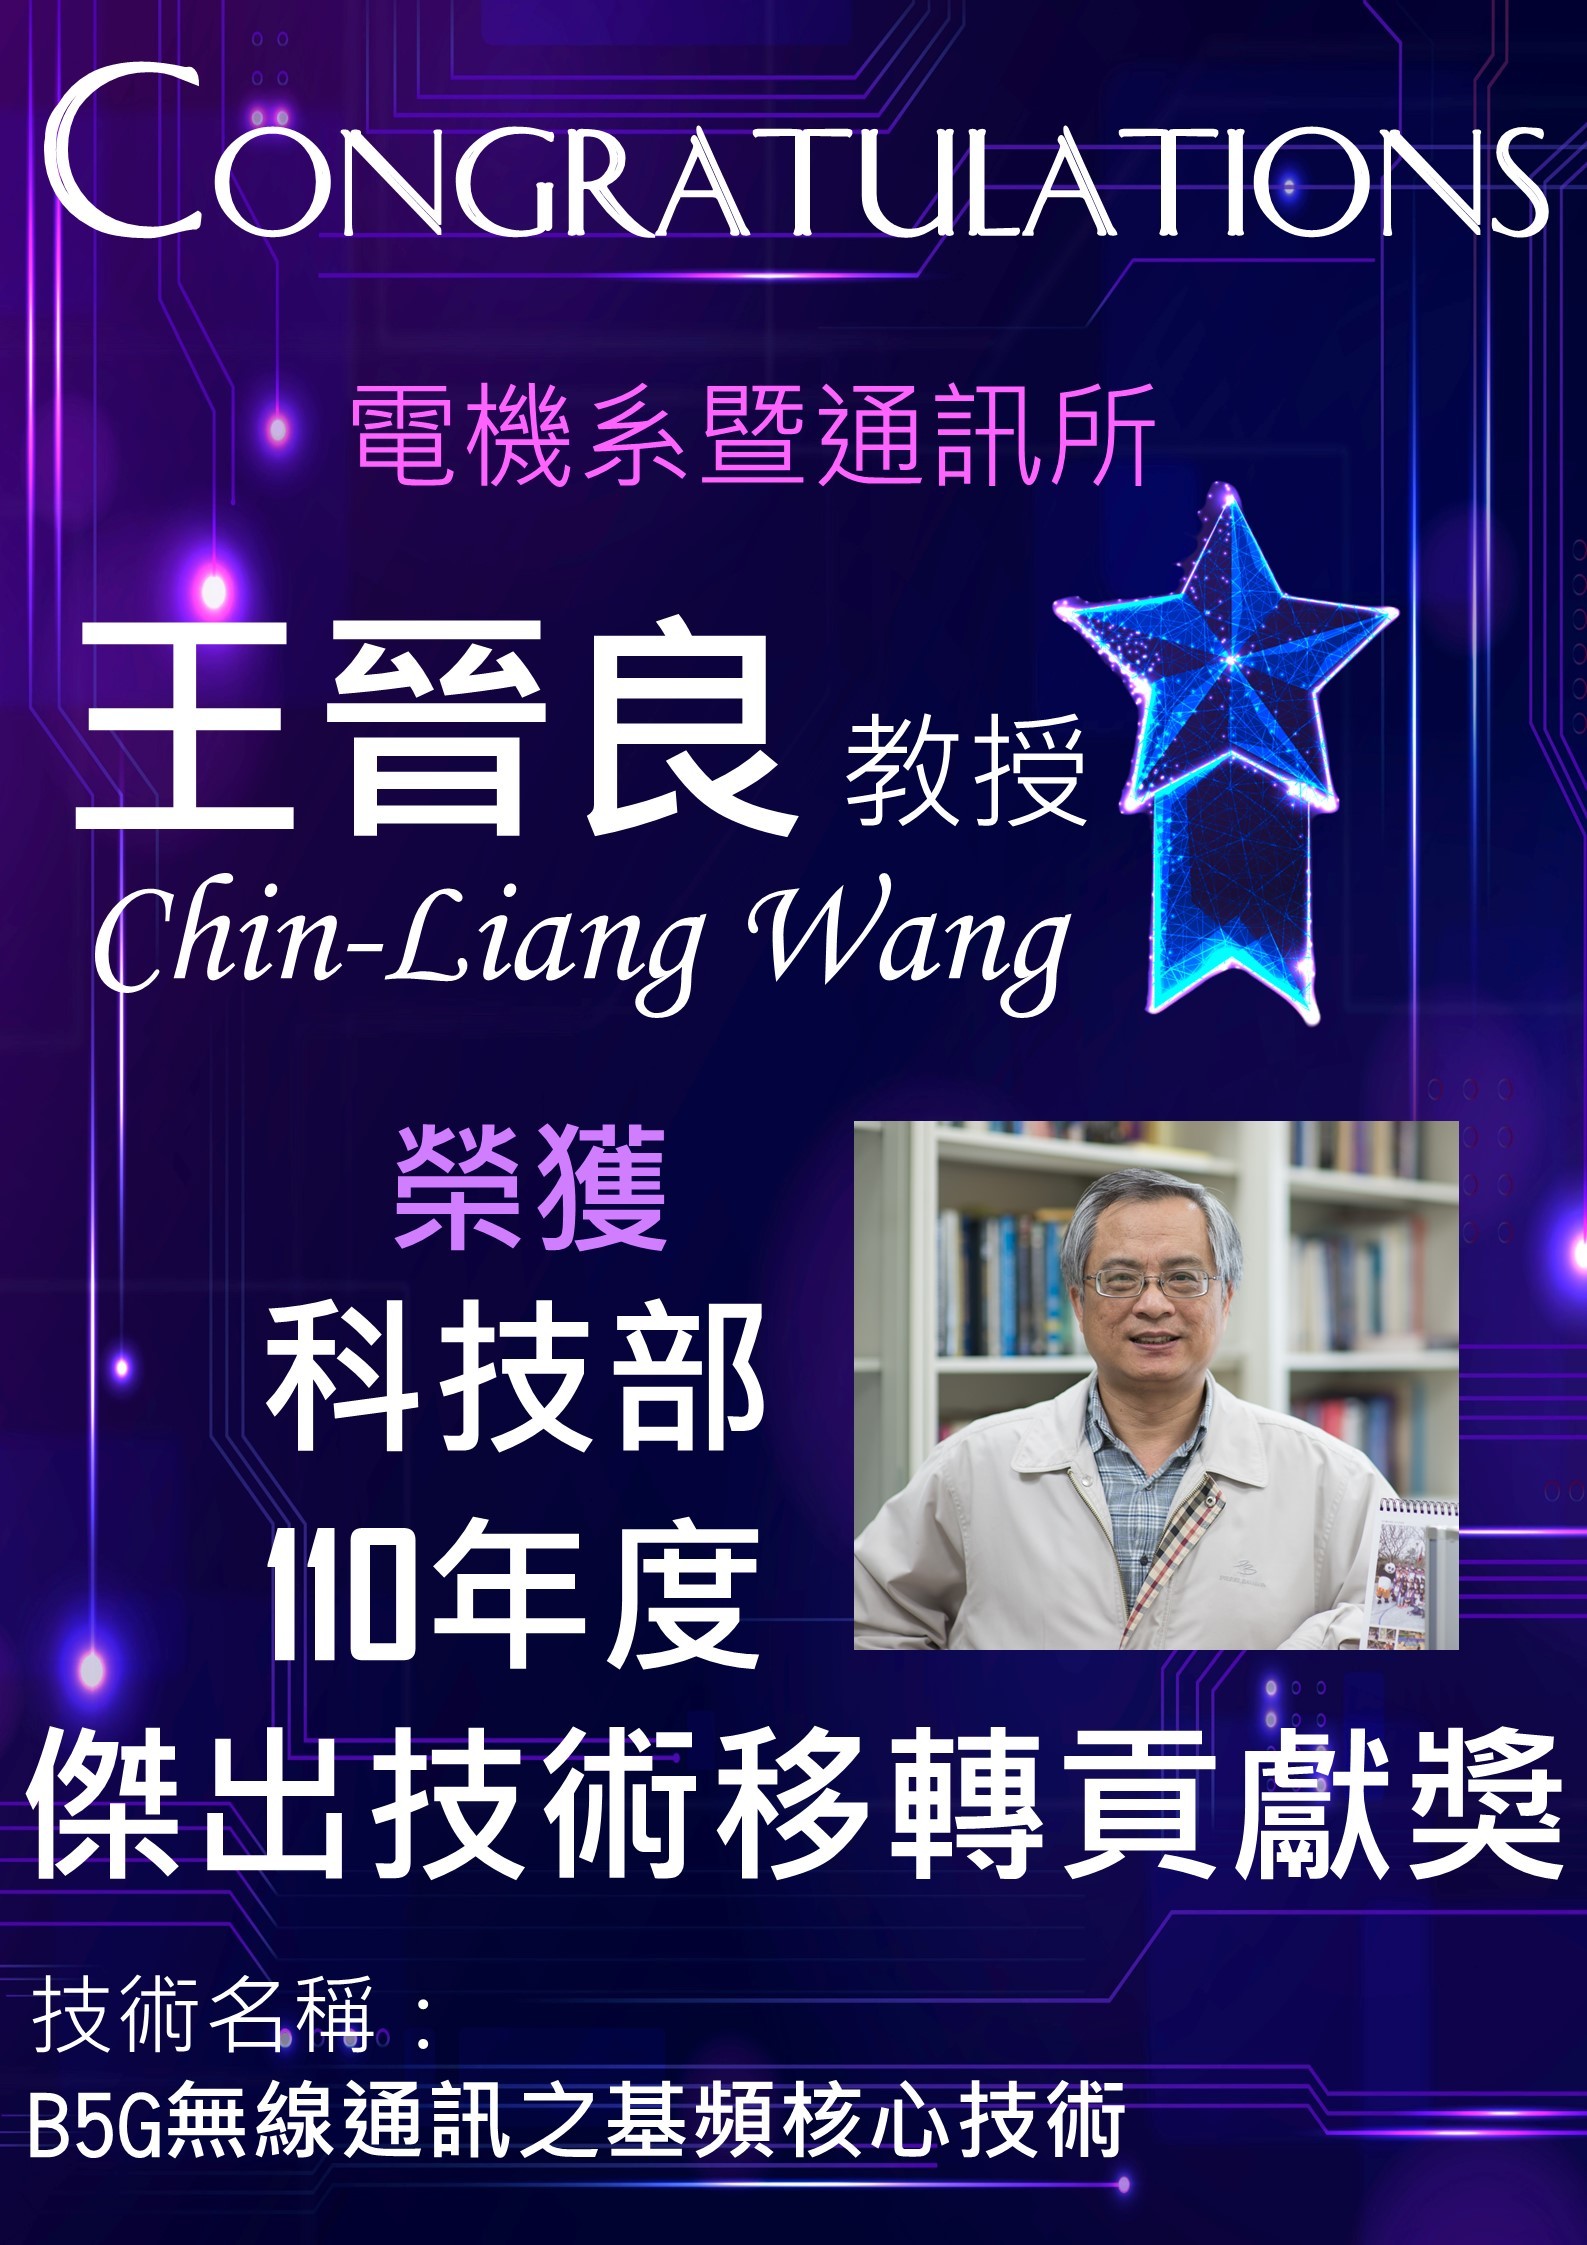 賀！王晉良教授榮獲科技部110年度「傑出技術移轉貢獻獎」